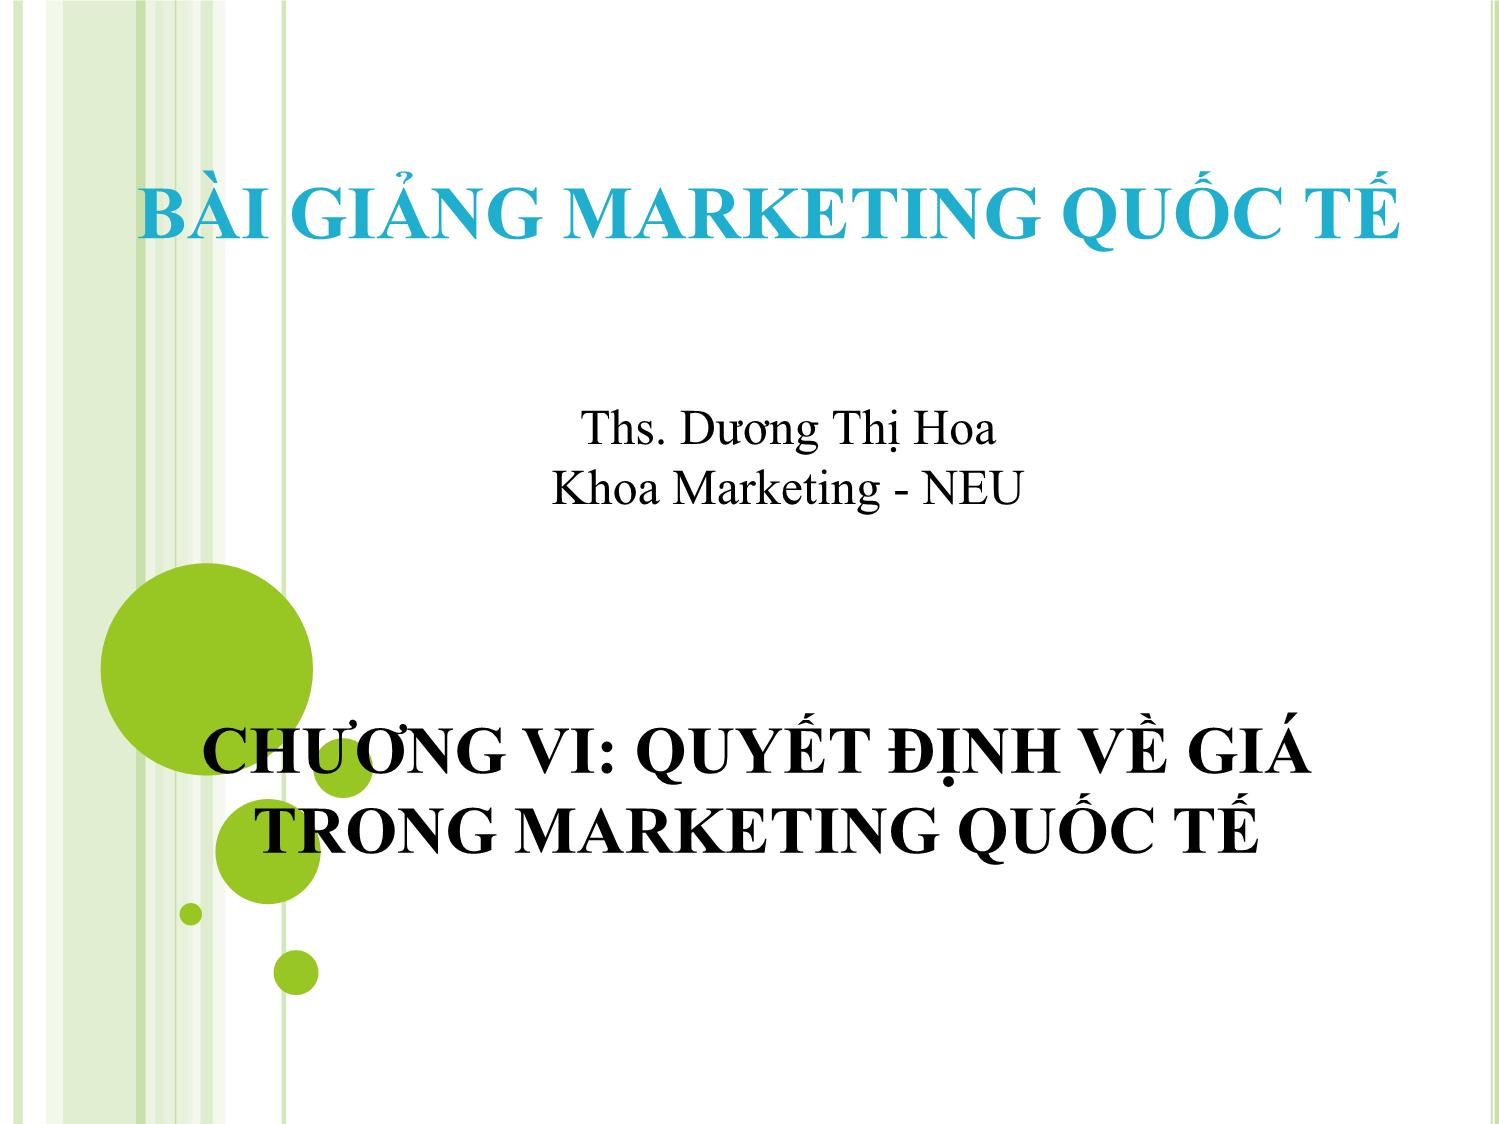 Bài giảng Marketing quốc tế - Chương 6: Quyết định về giá trong marketing quốc tế - Dương Thị Hoa trang 1